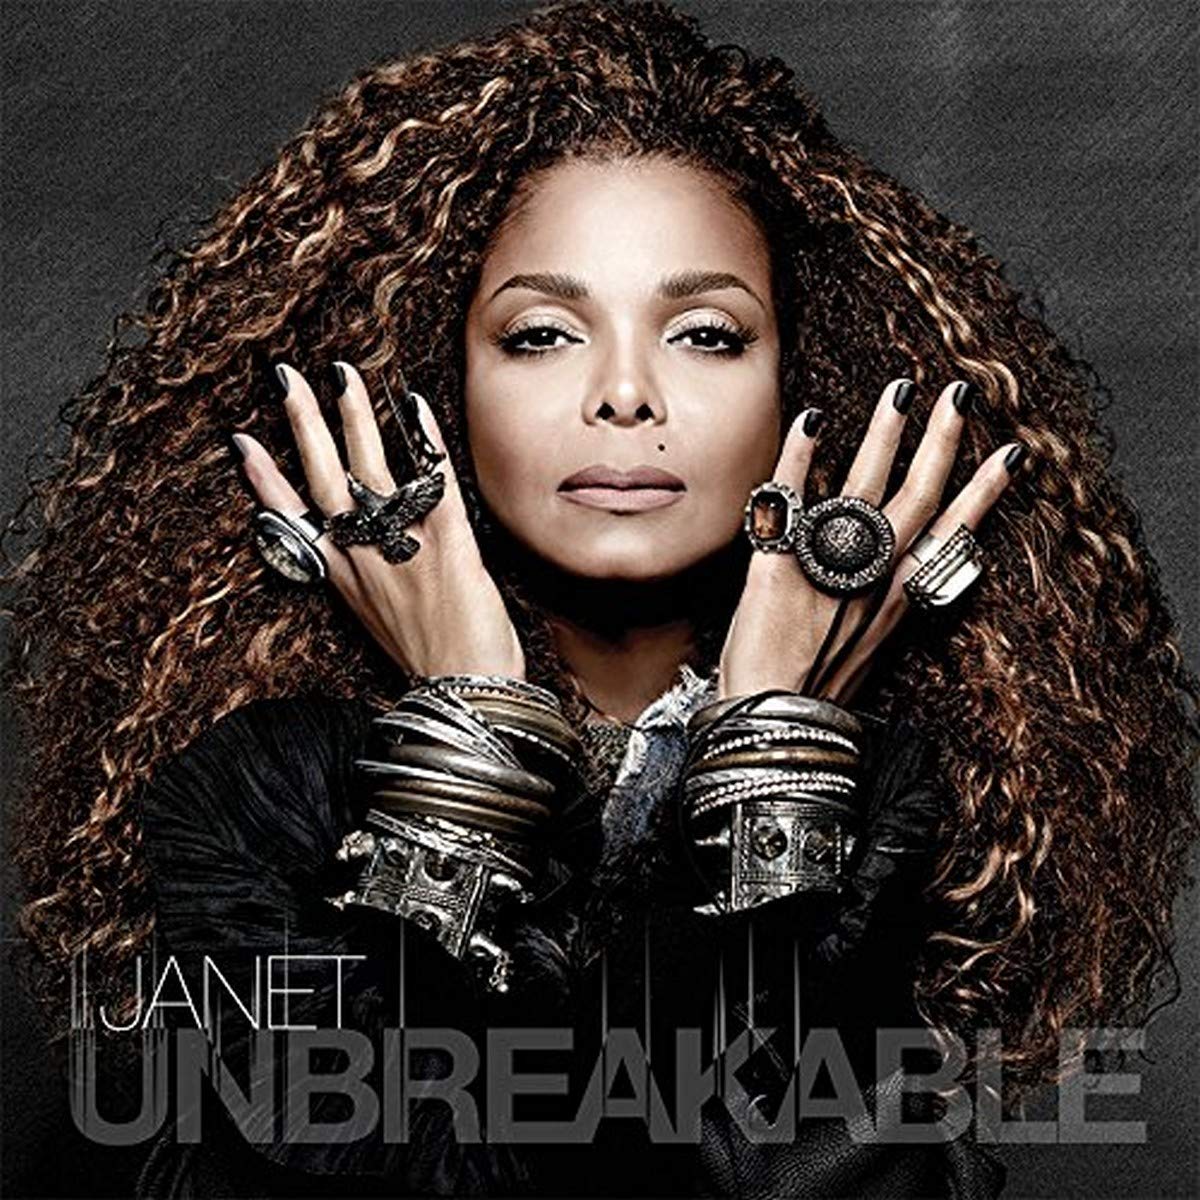 Janet Jackson 'Unbreakable' Vinyl Record LP - Sentinel Vinyl